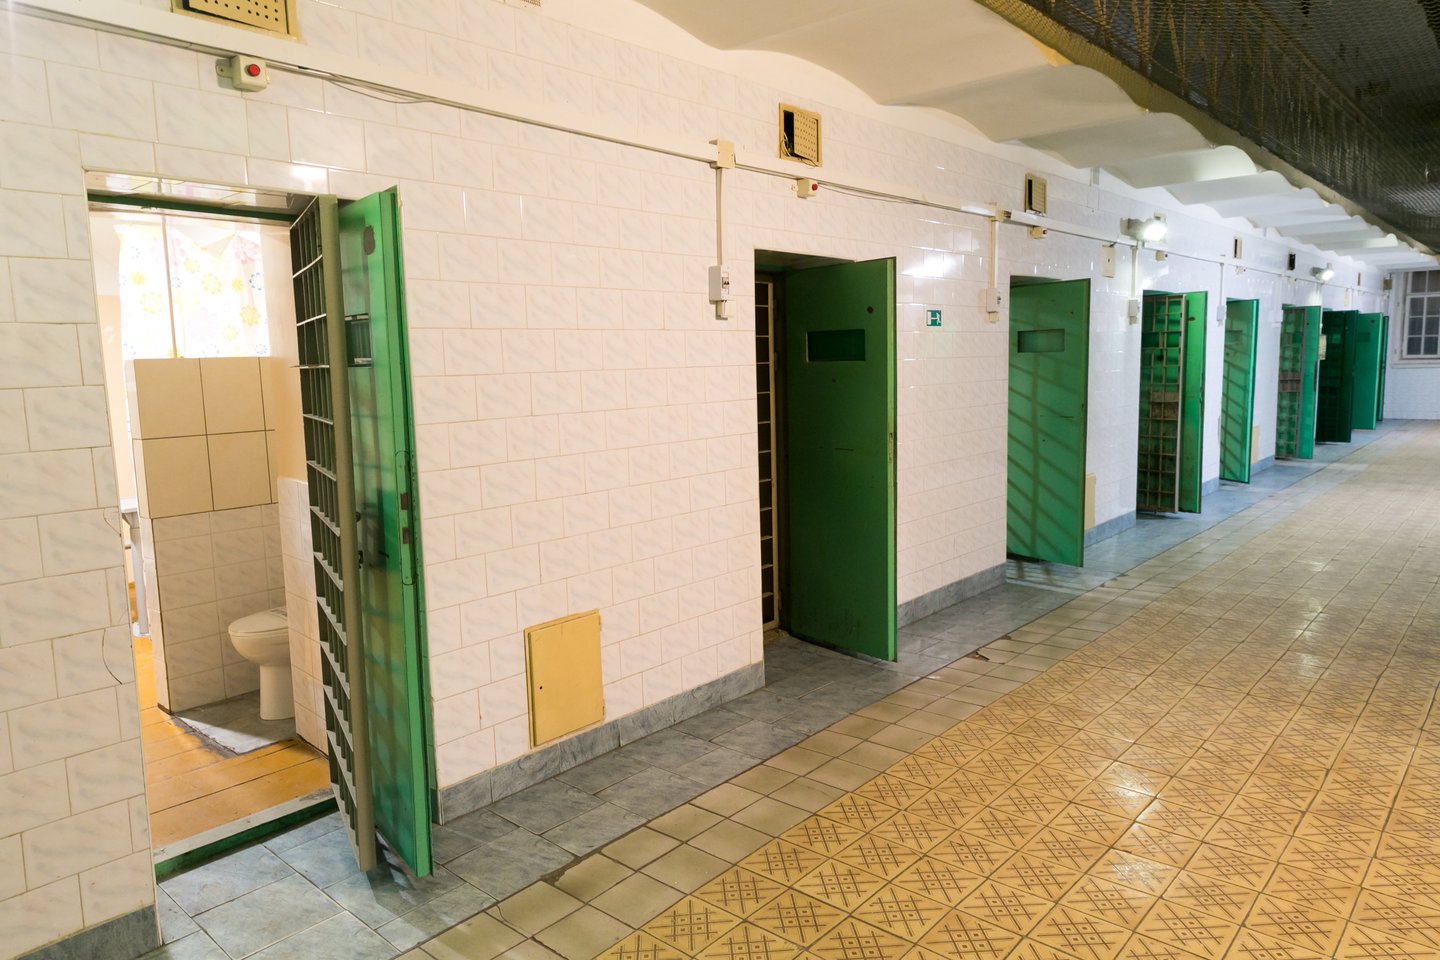 Lukiškių kalėjimas<br>T.Bauro nuotr.